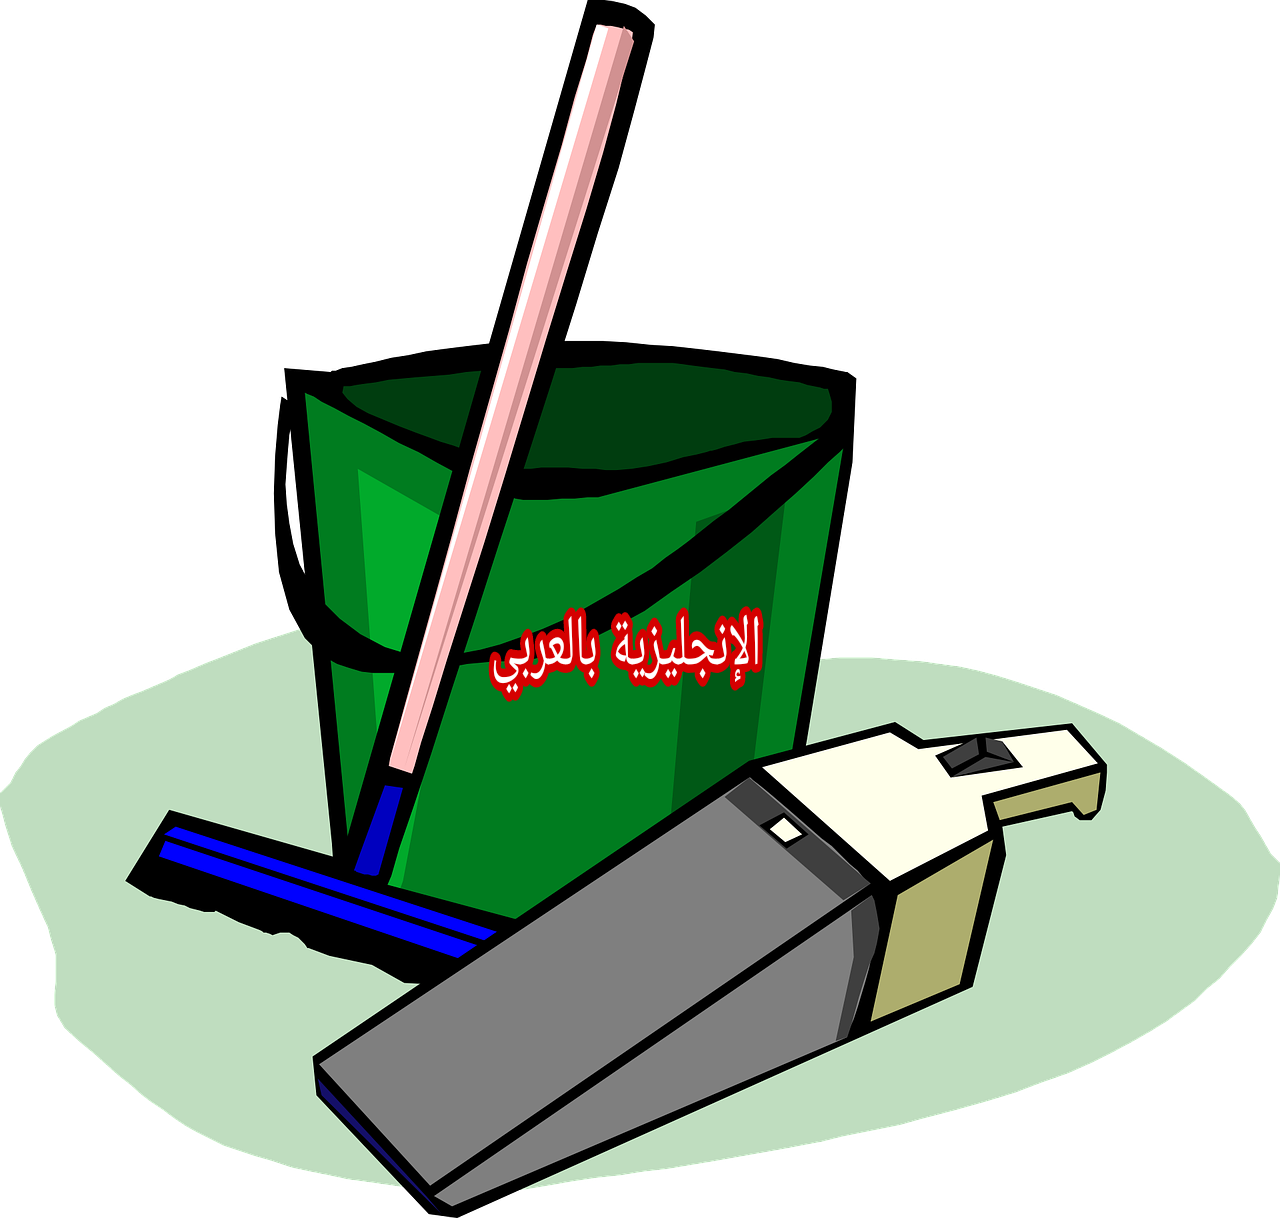 مصطلحات الأعمال المنزلية بالإنجليزي والعربي